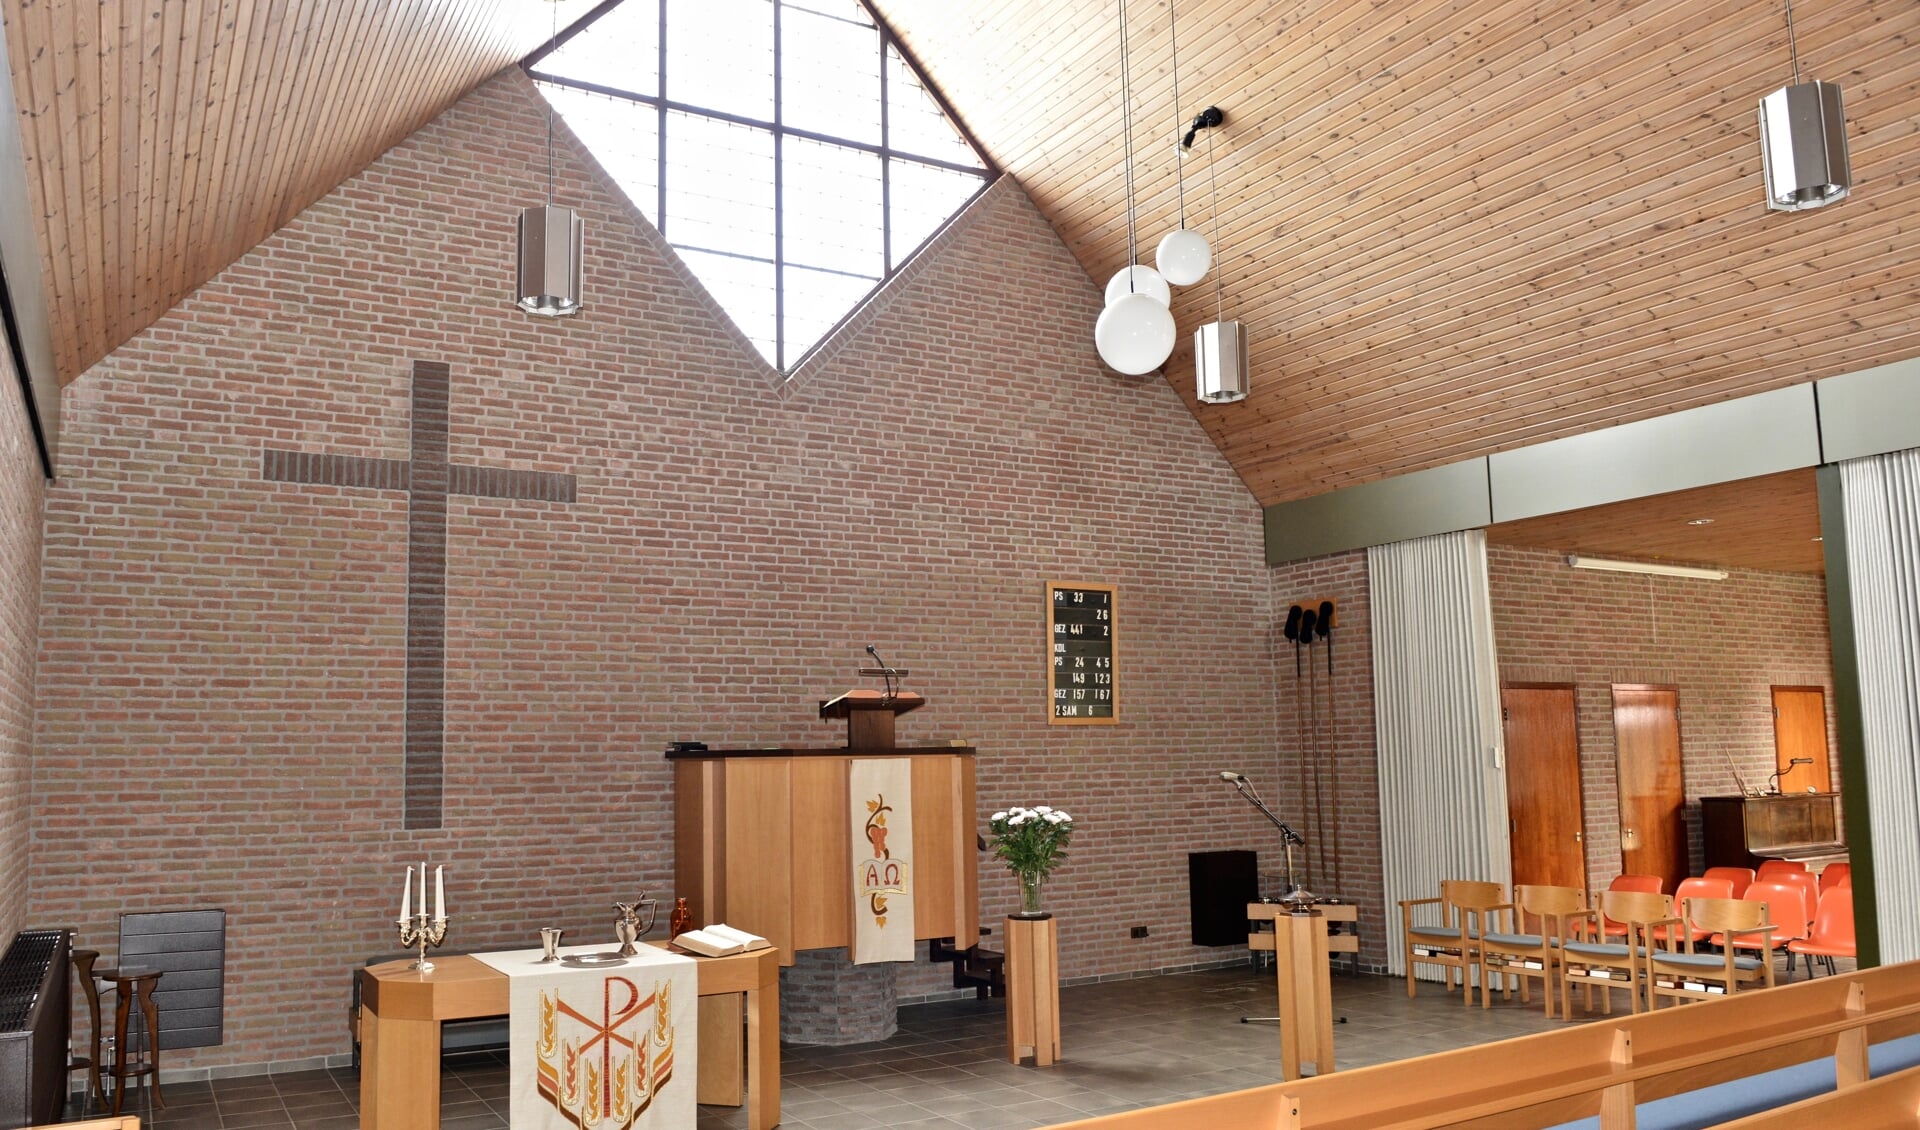 Op 2 januari 1983 vond de instituering van de Hervormde gemeente te Poeldijk plaats.